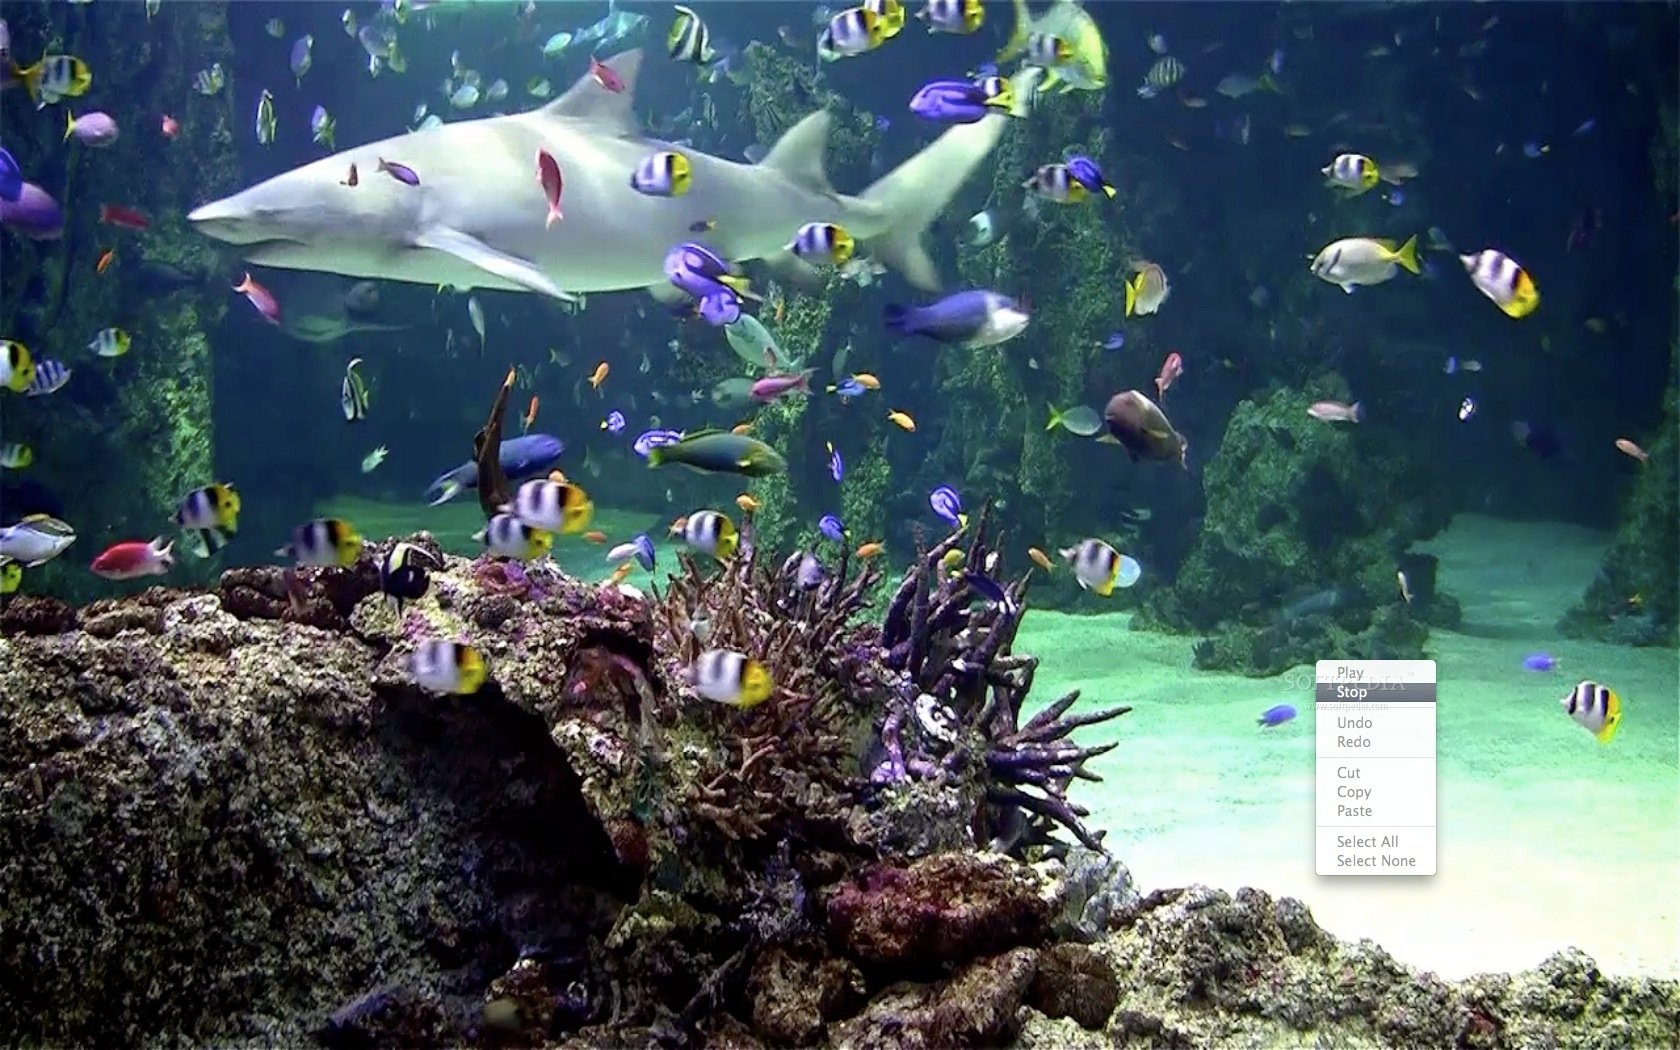 aquarium live wallpaper hd,fish,marine biology,fish,aquarium,underwater